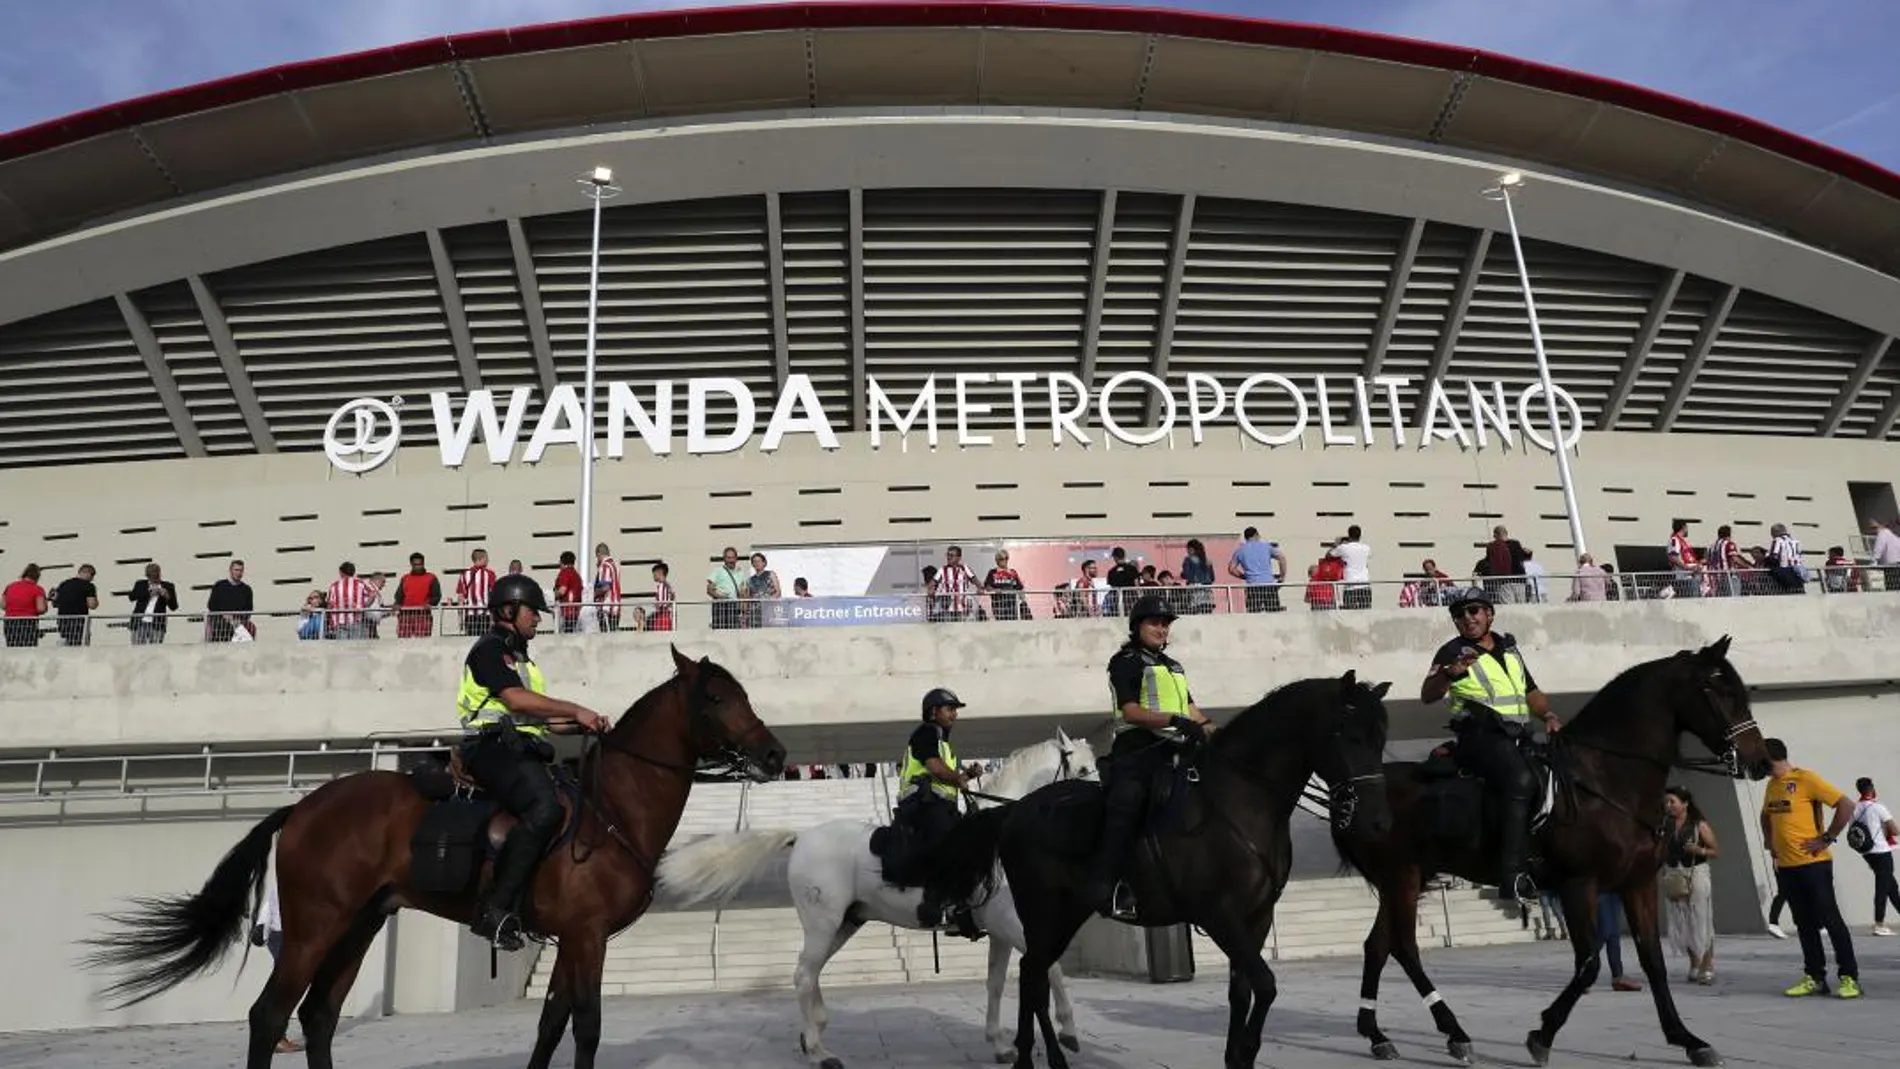 Varios agentes patrullan los alrededores del Wanda Metropolitano antes de un partido de Champions